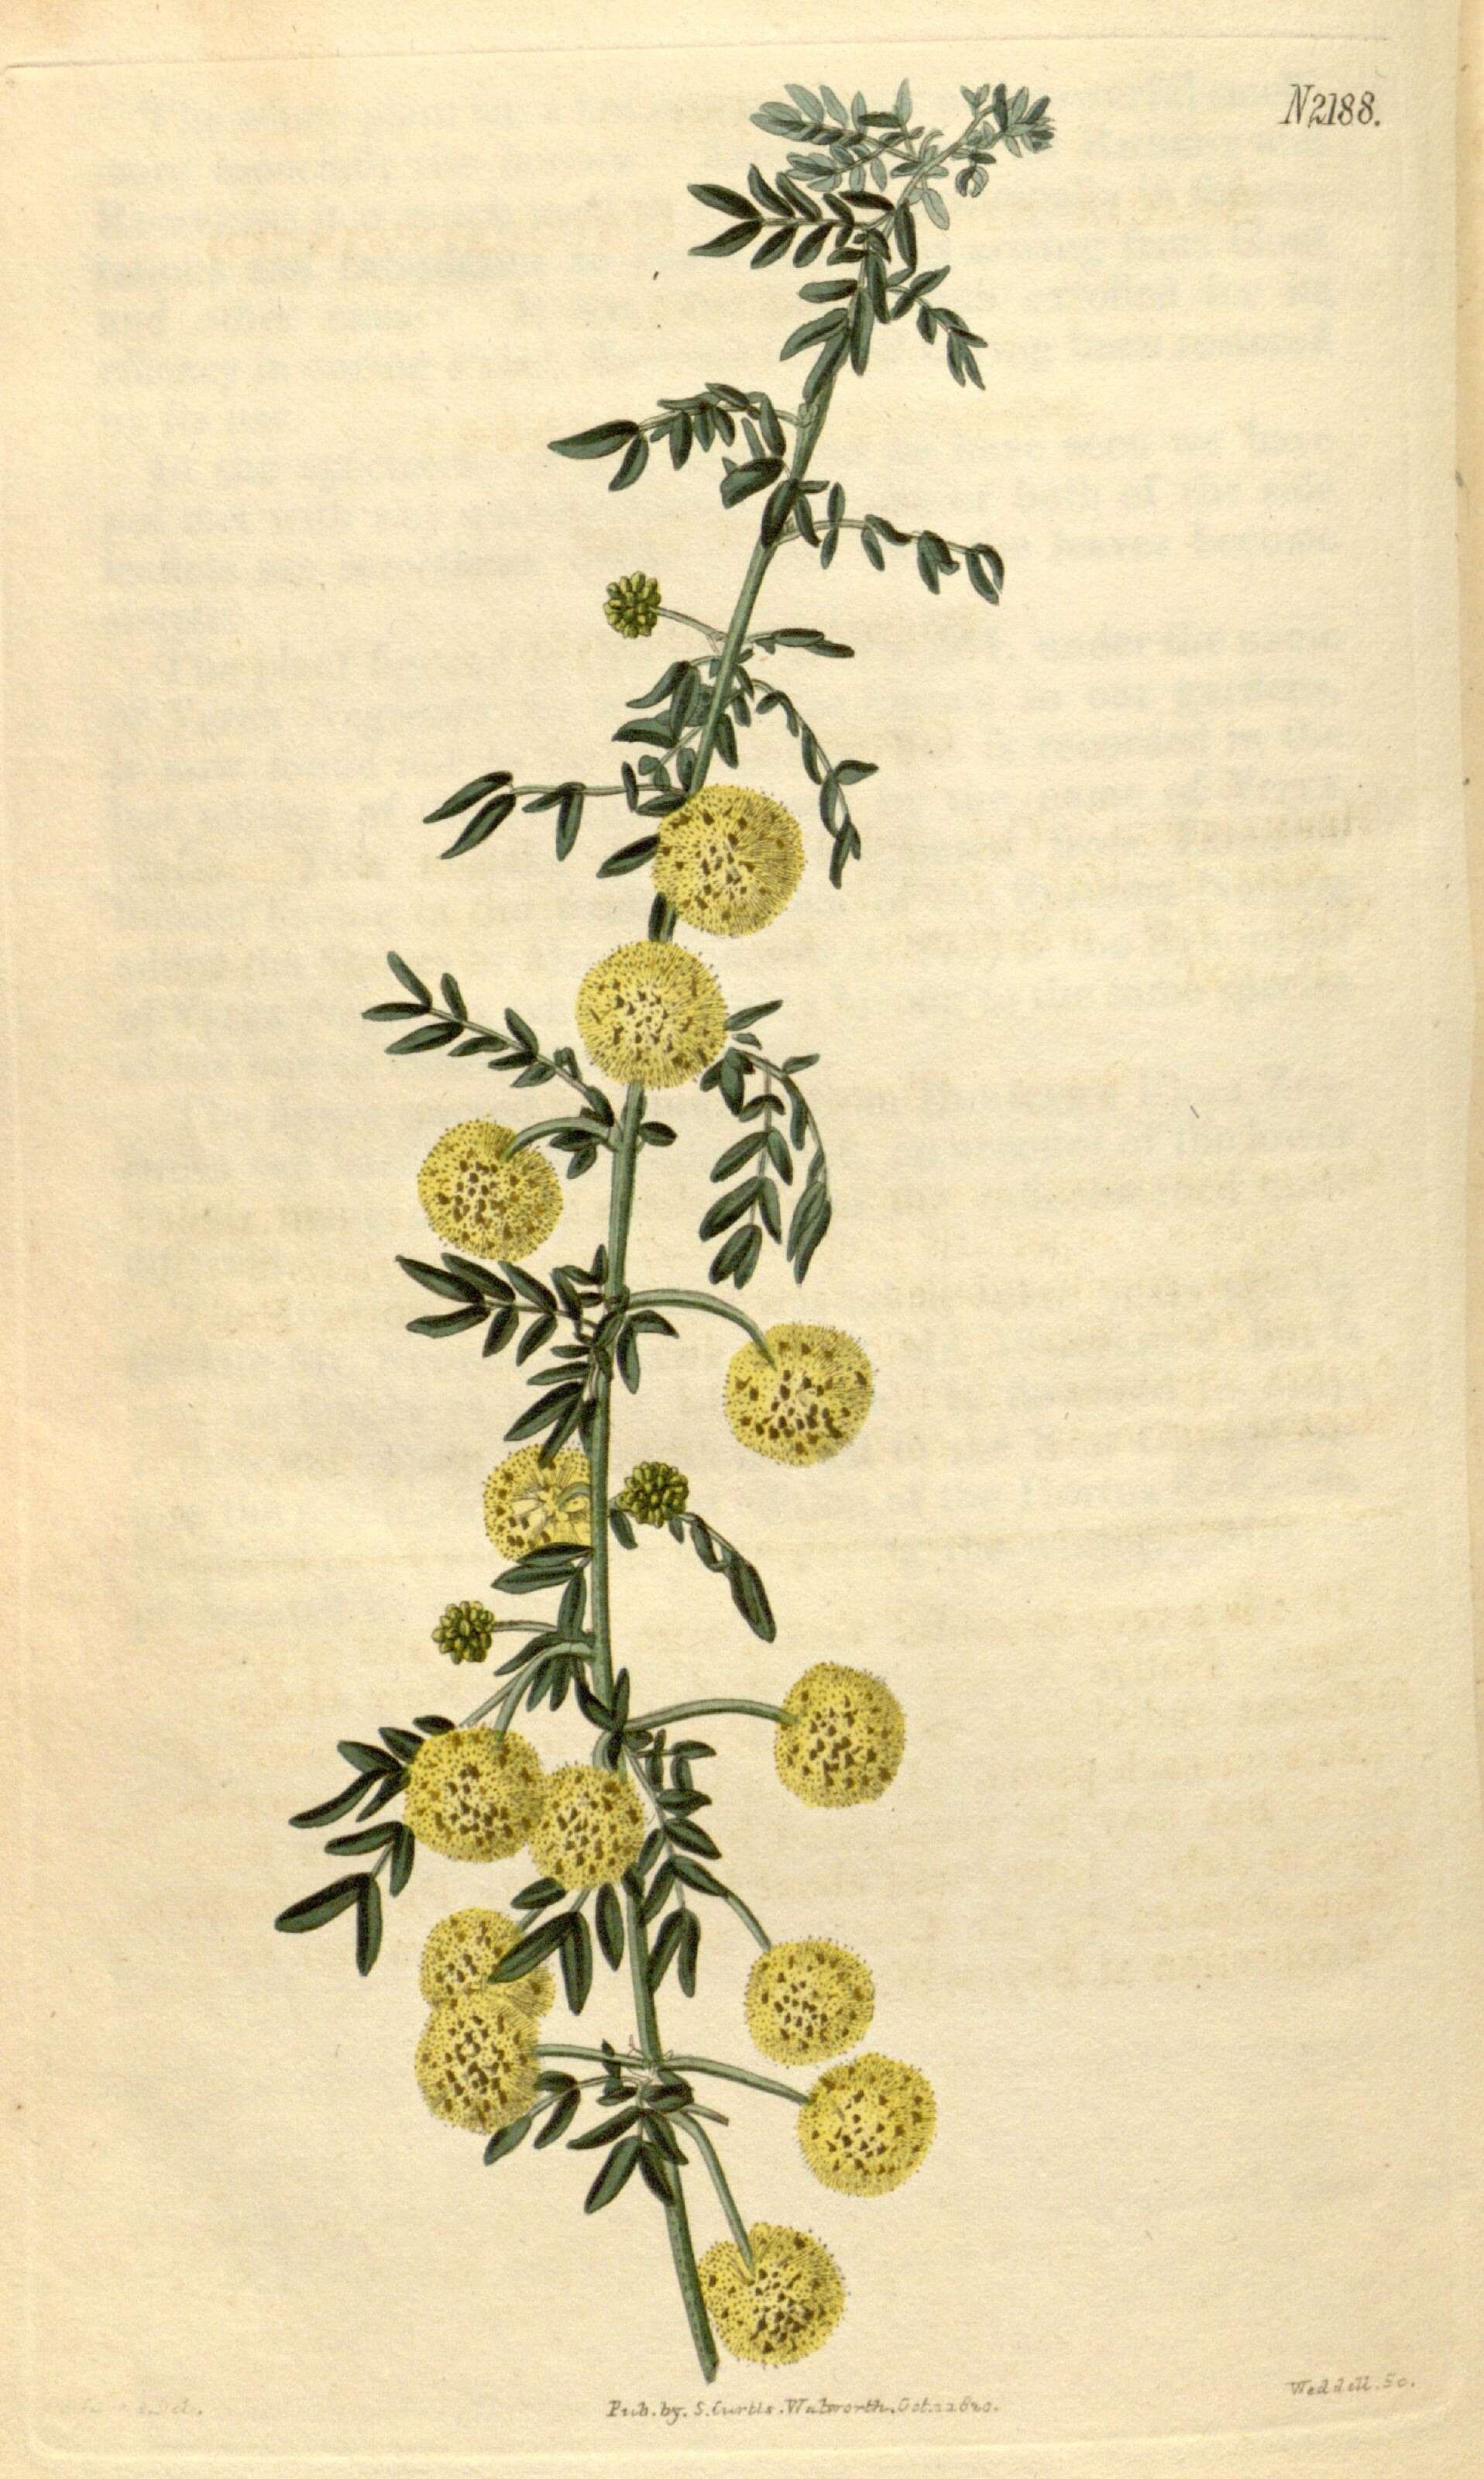 Image of Acacia nigricans (Labill.) R. Br.